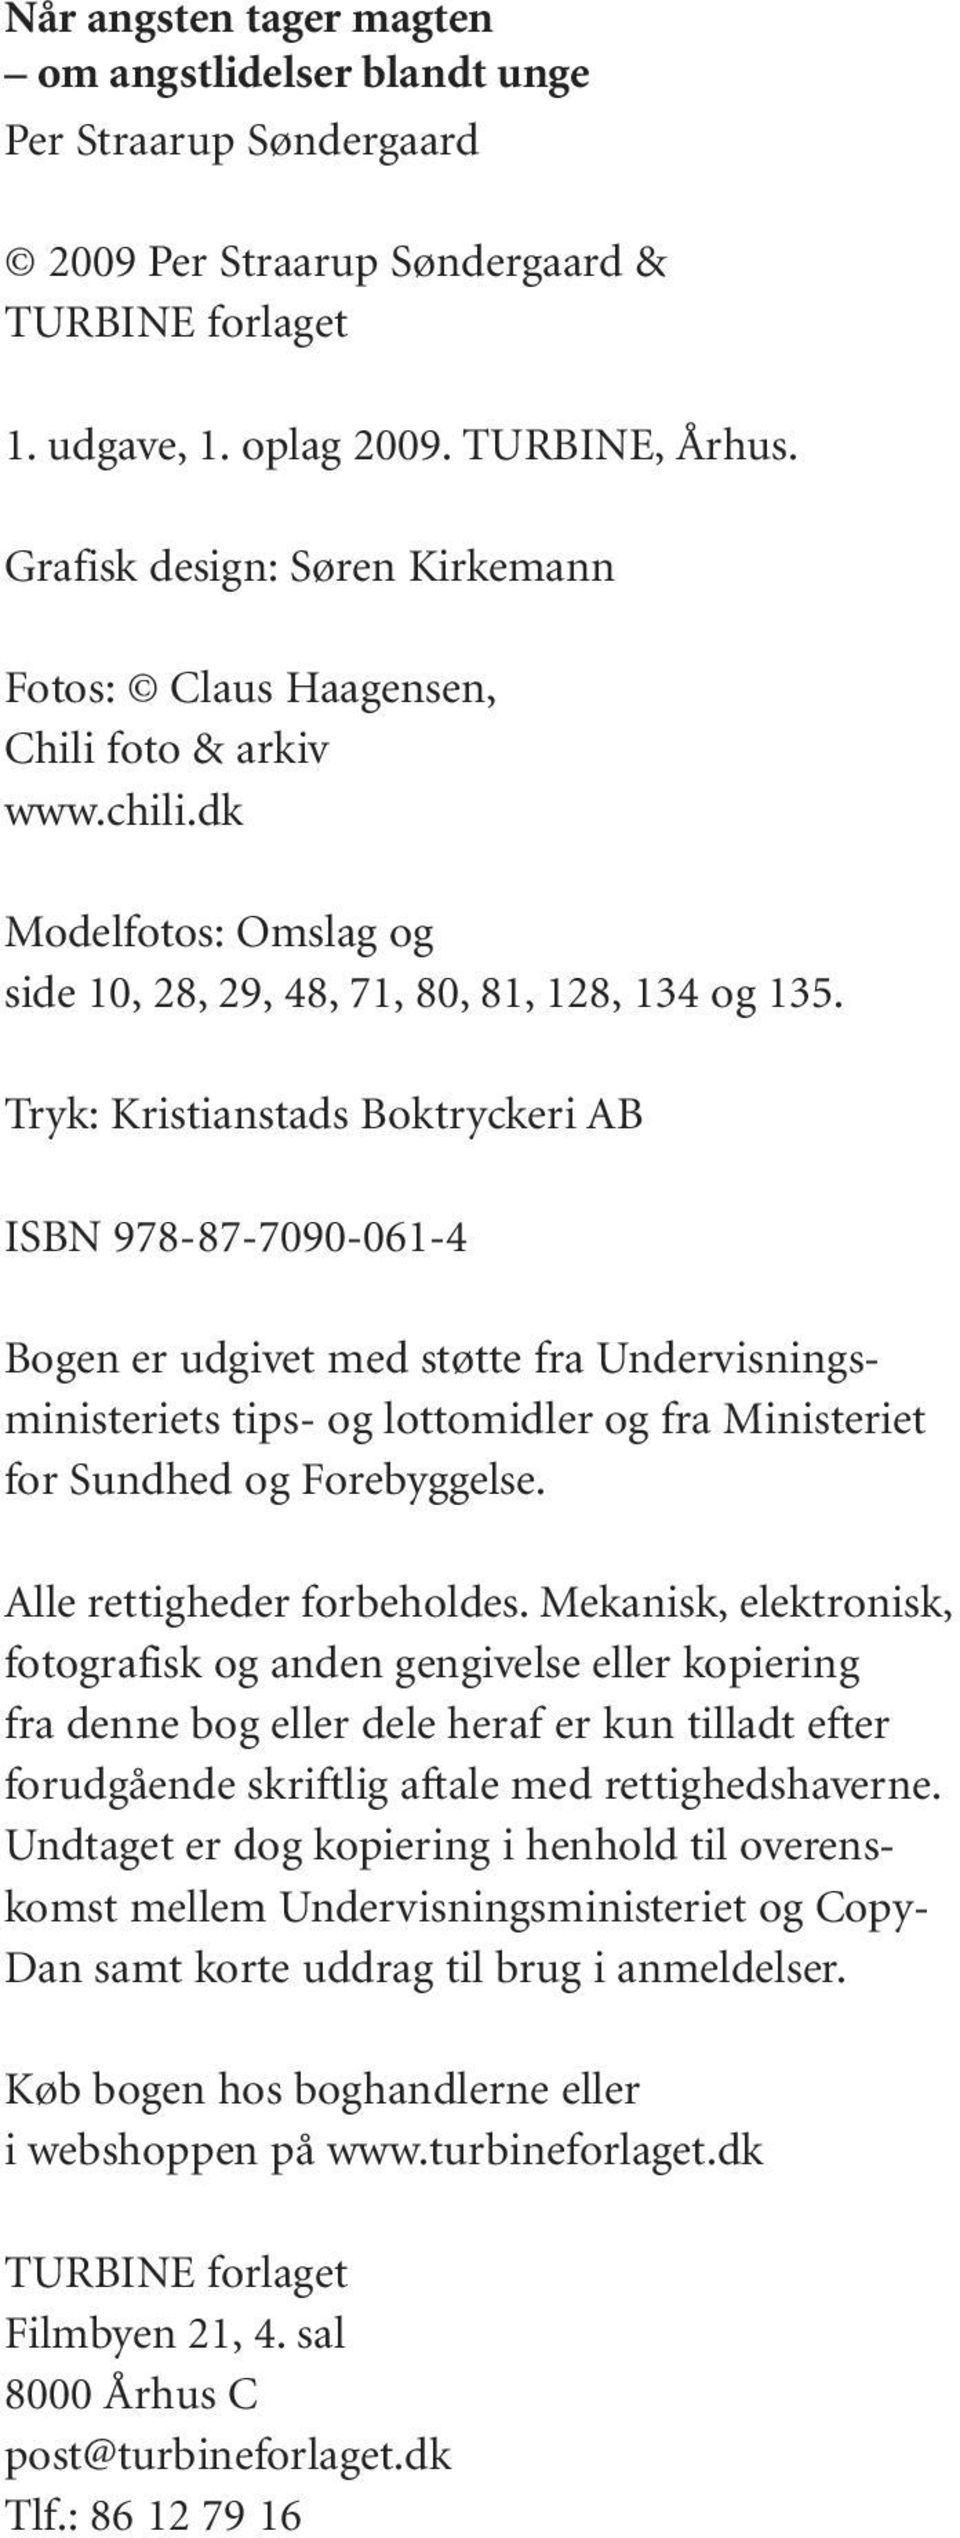 Tryk: Kristianstads Boktryckeri AB ISBN 978-87-7090-061-4 Bogen er udgivet med støtte fra Undervisningsministeriets tips- og lottomidler og fra Ministeriet for Sundhed og Forebyggelse.